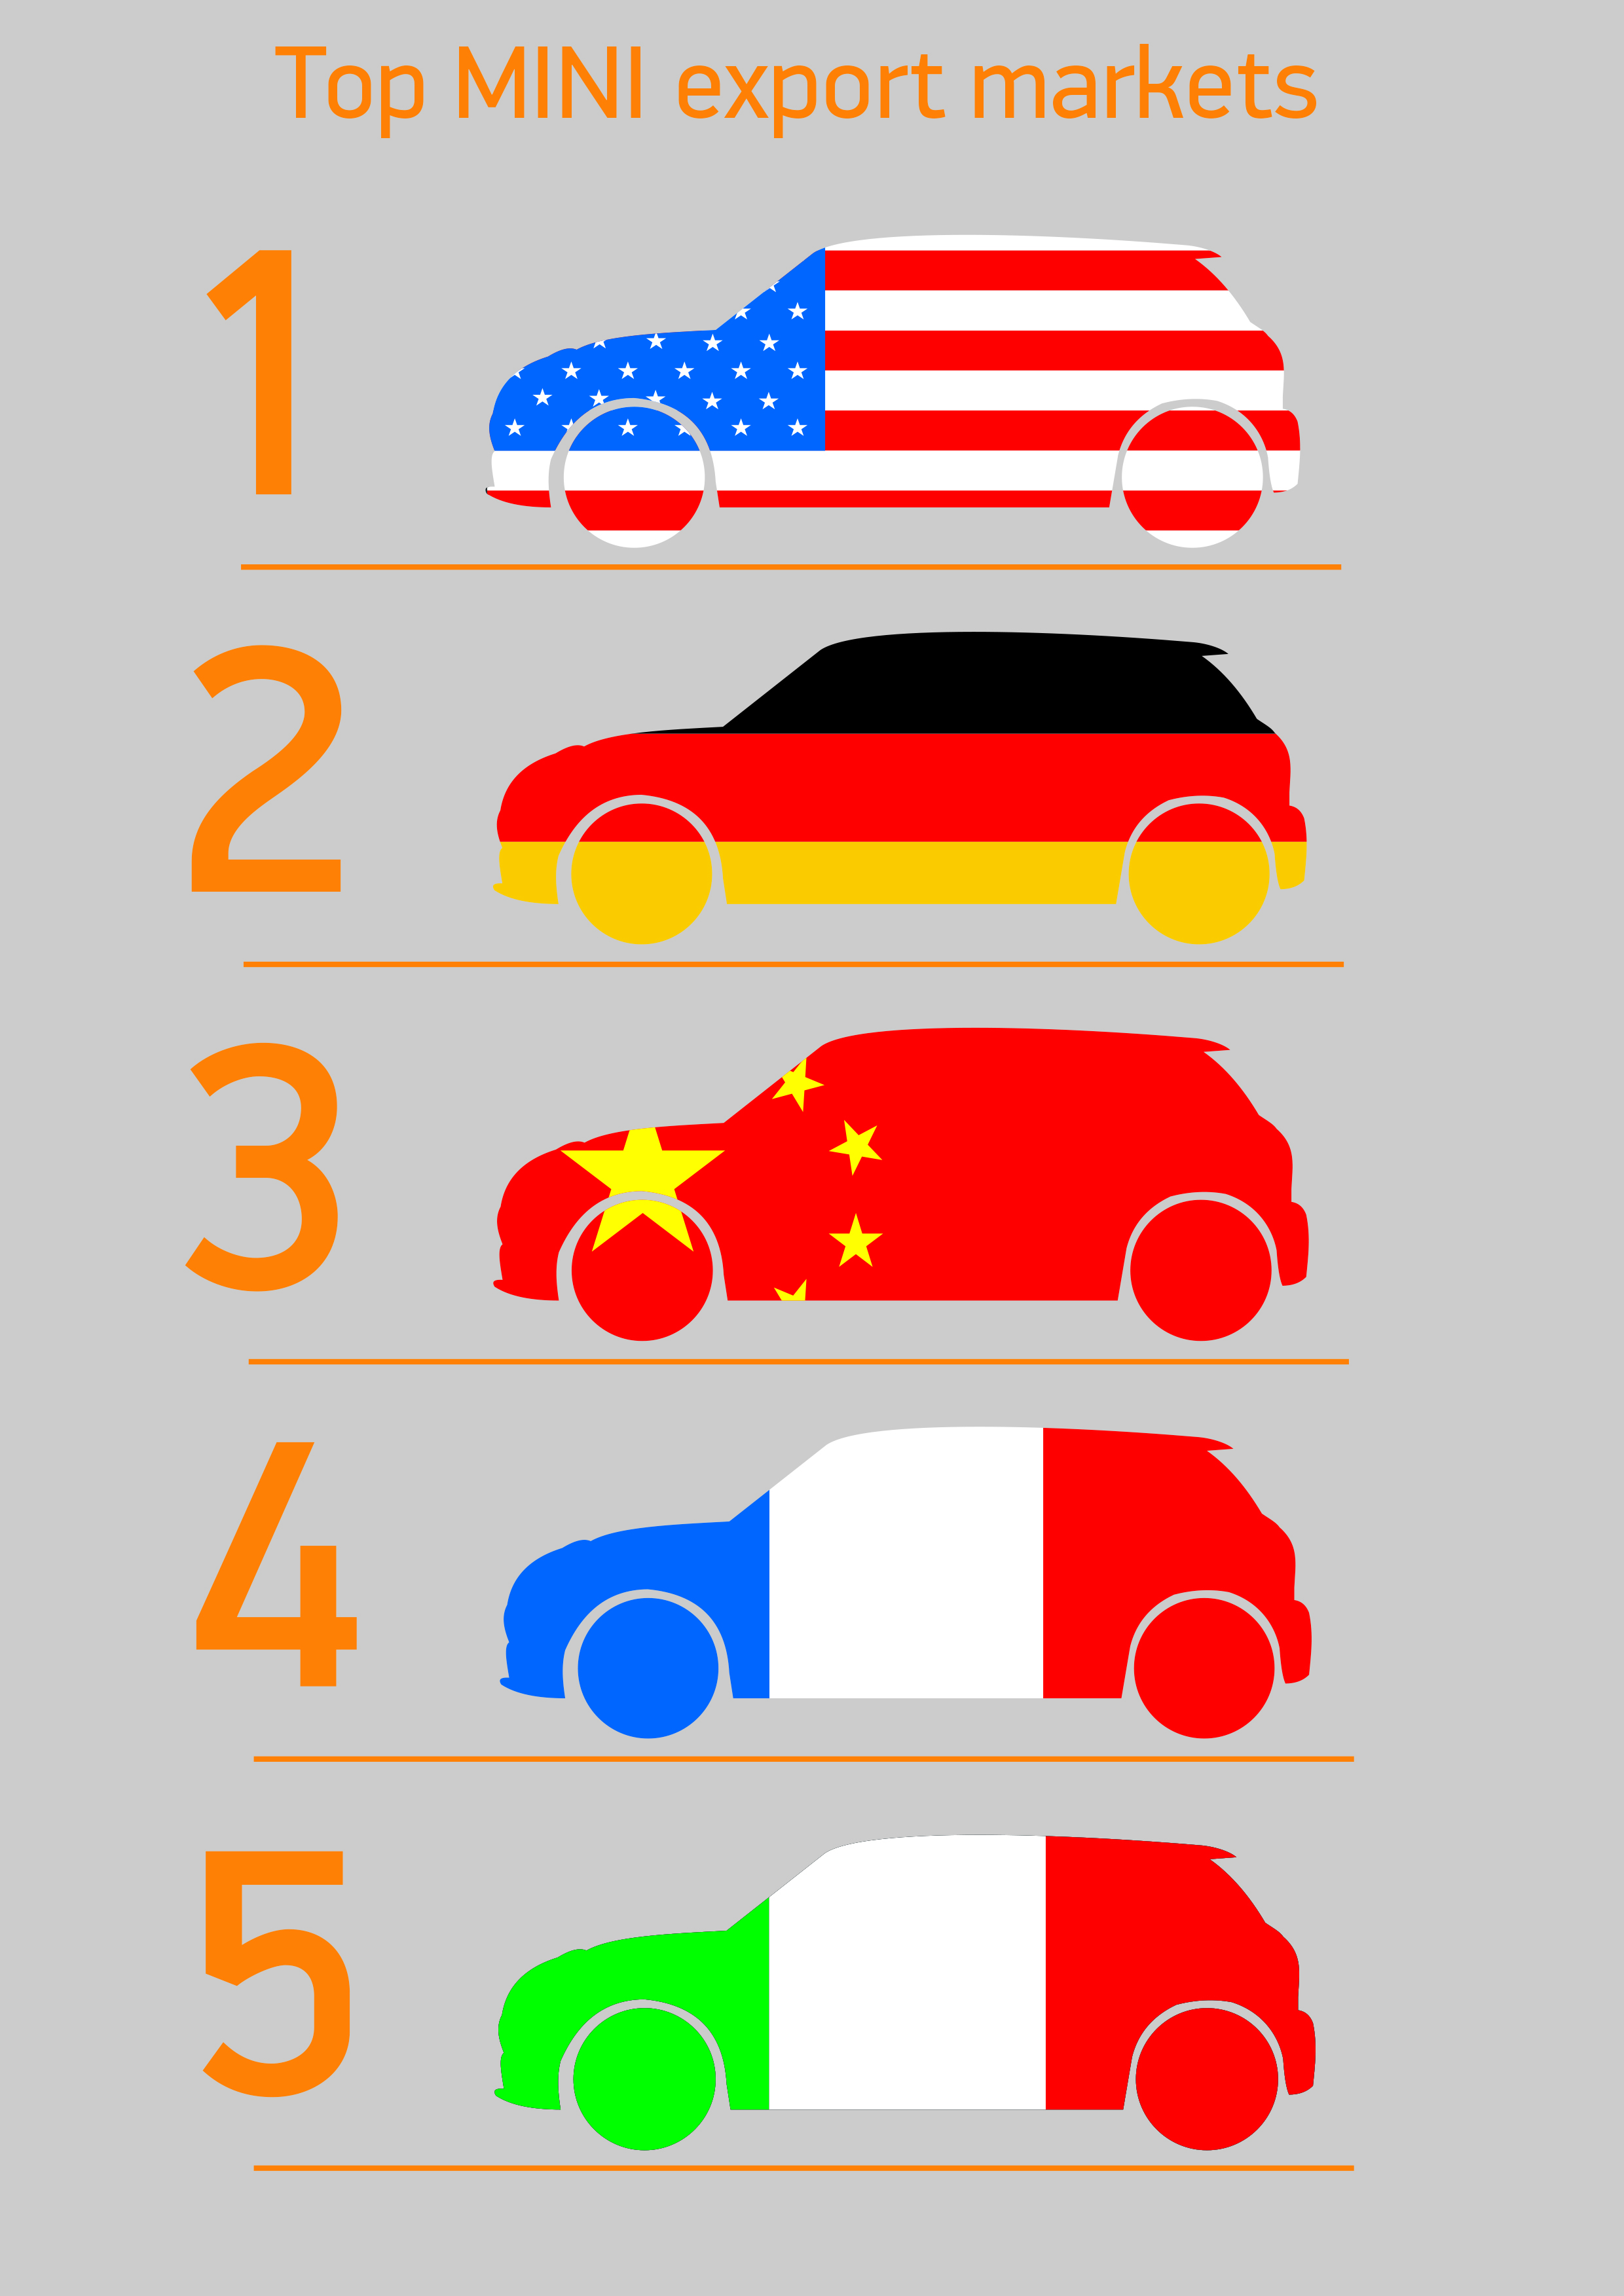 Top 5 export markets for MINI